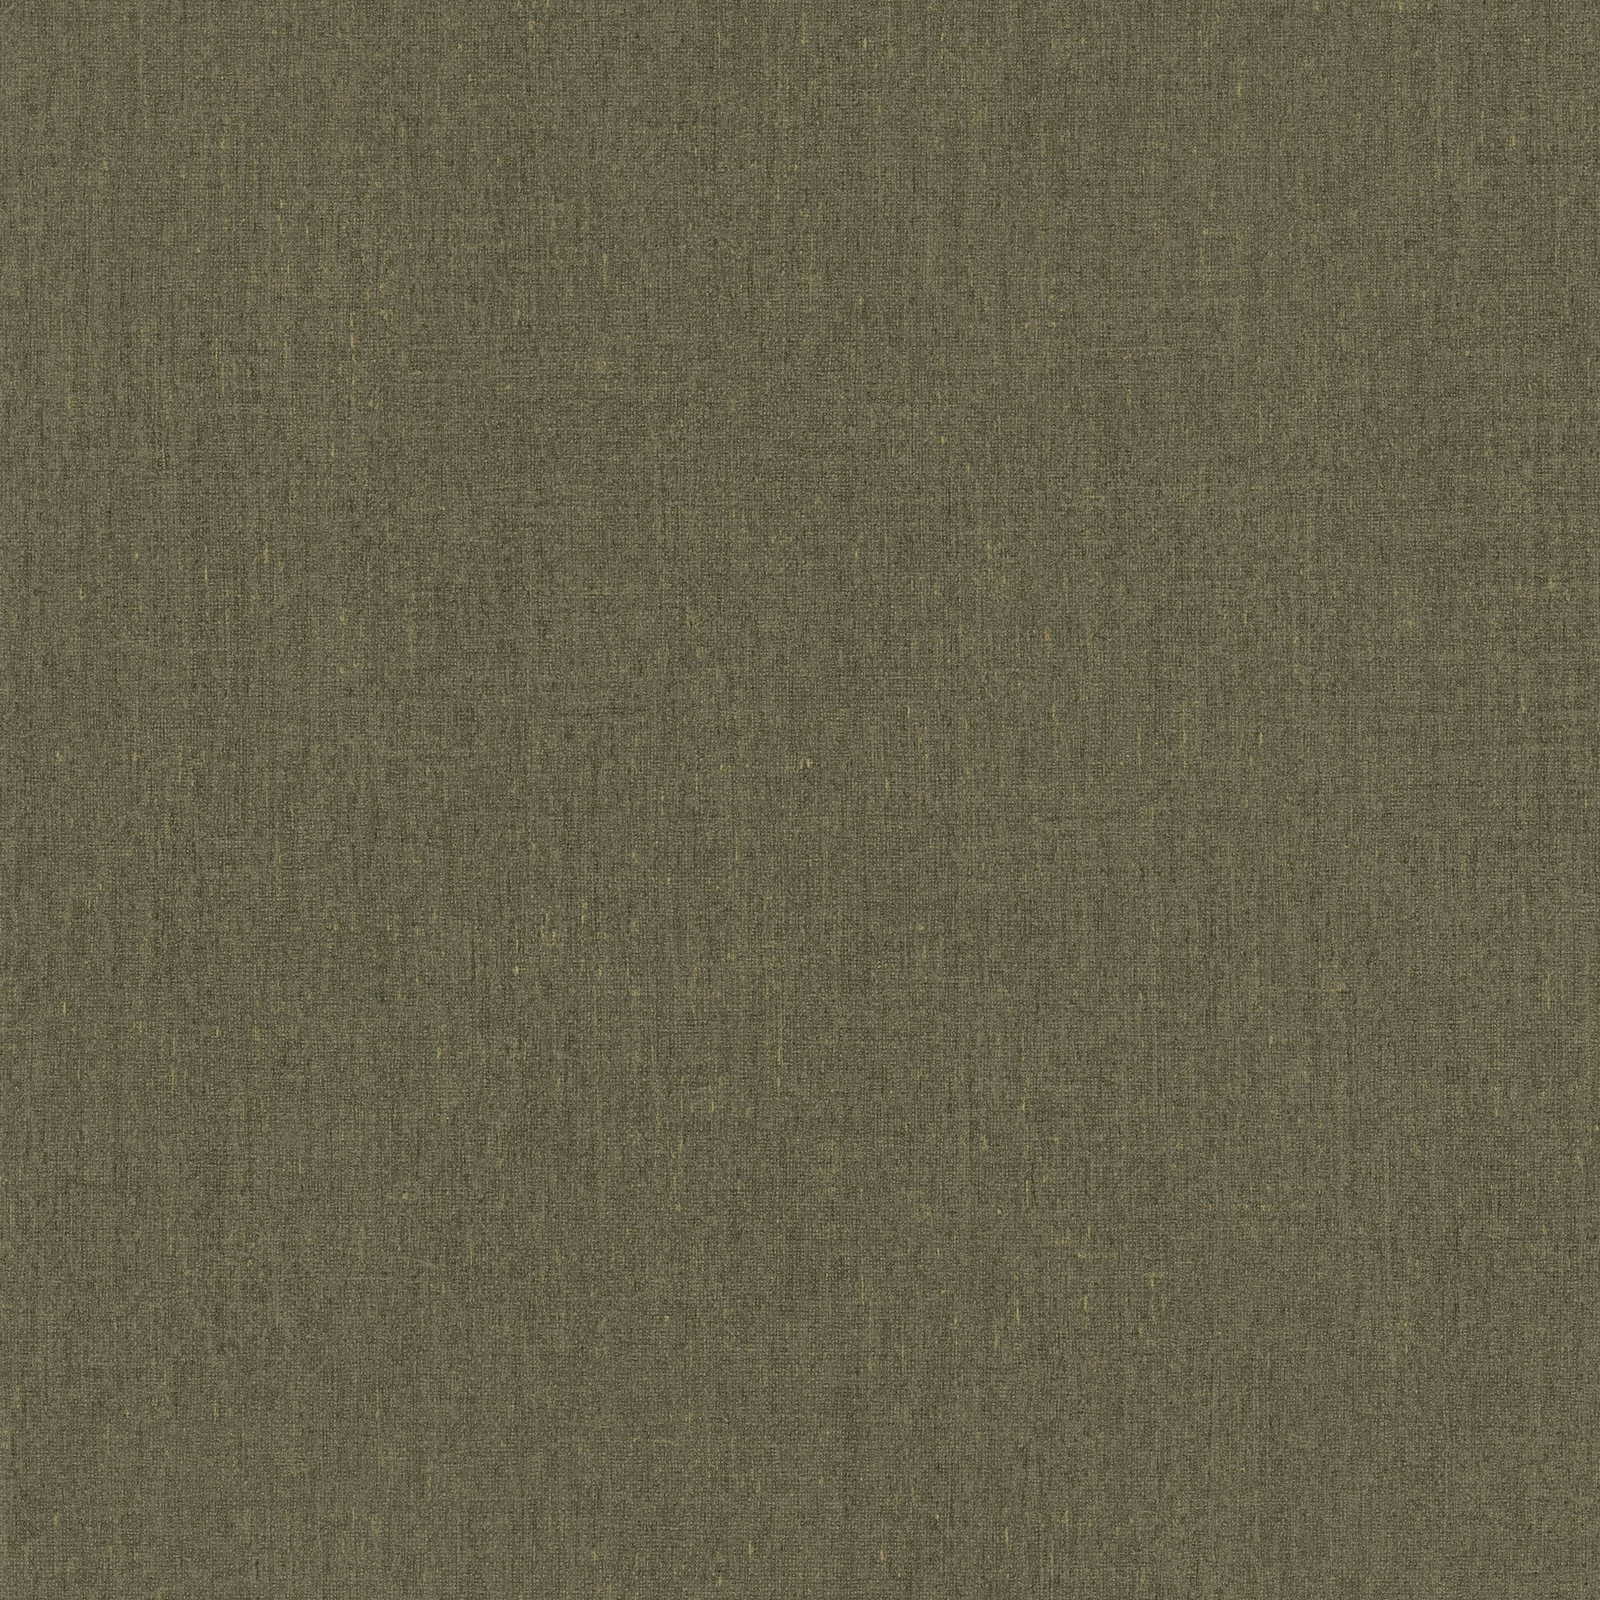 Papier peint marron clair et olive chiné, avec détails structurés - marron
